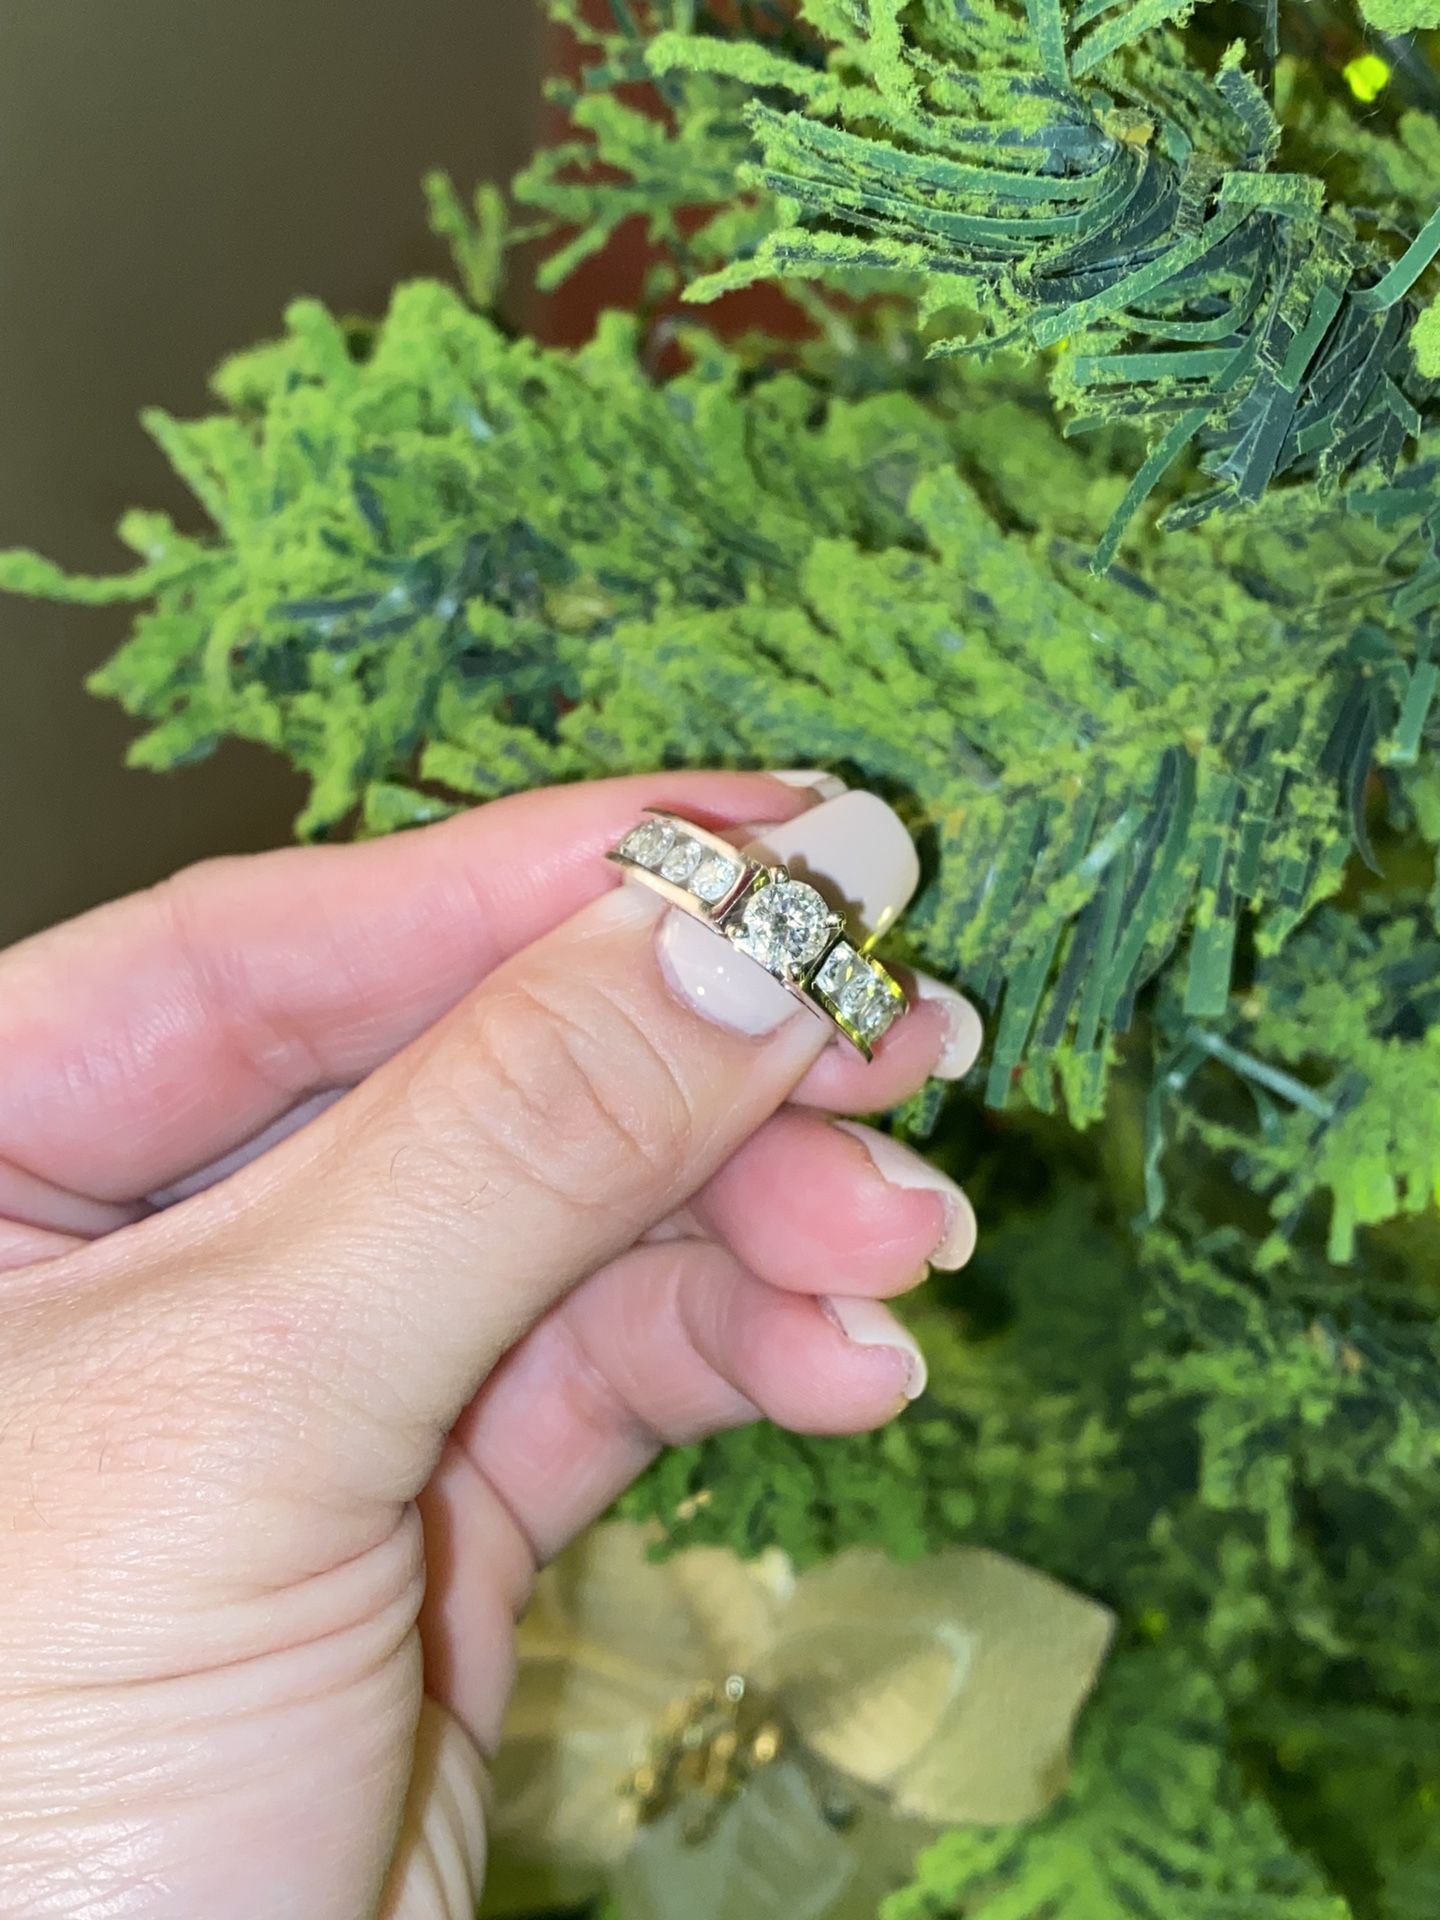 Diamond Engagement Ring “2 Carat” 14k White Gold